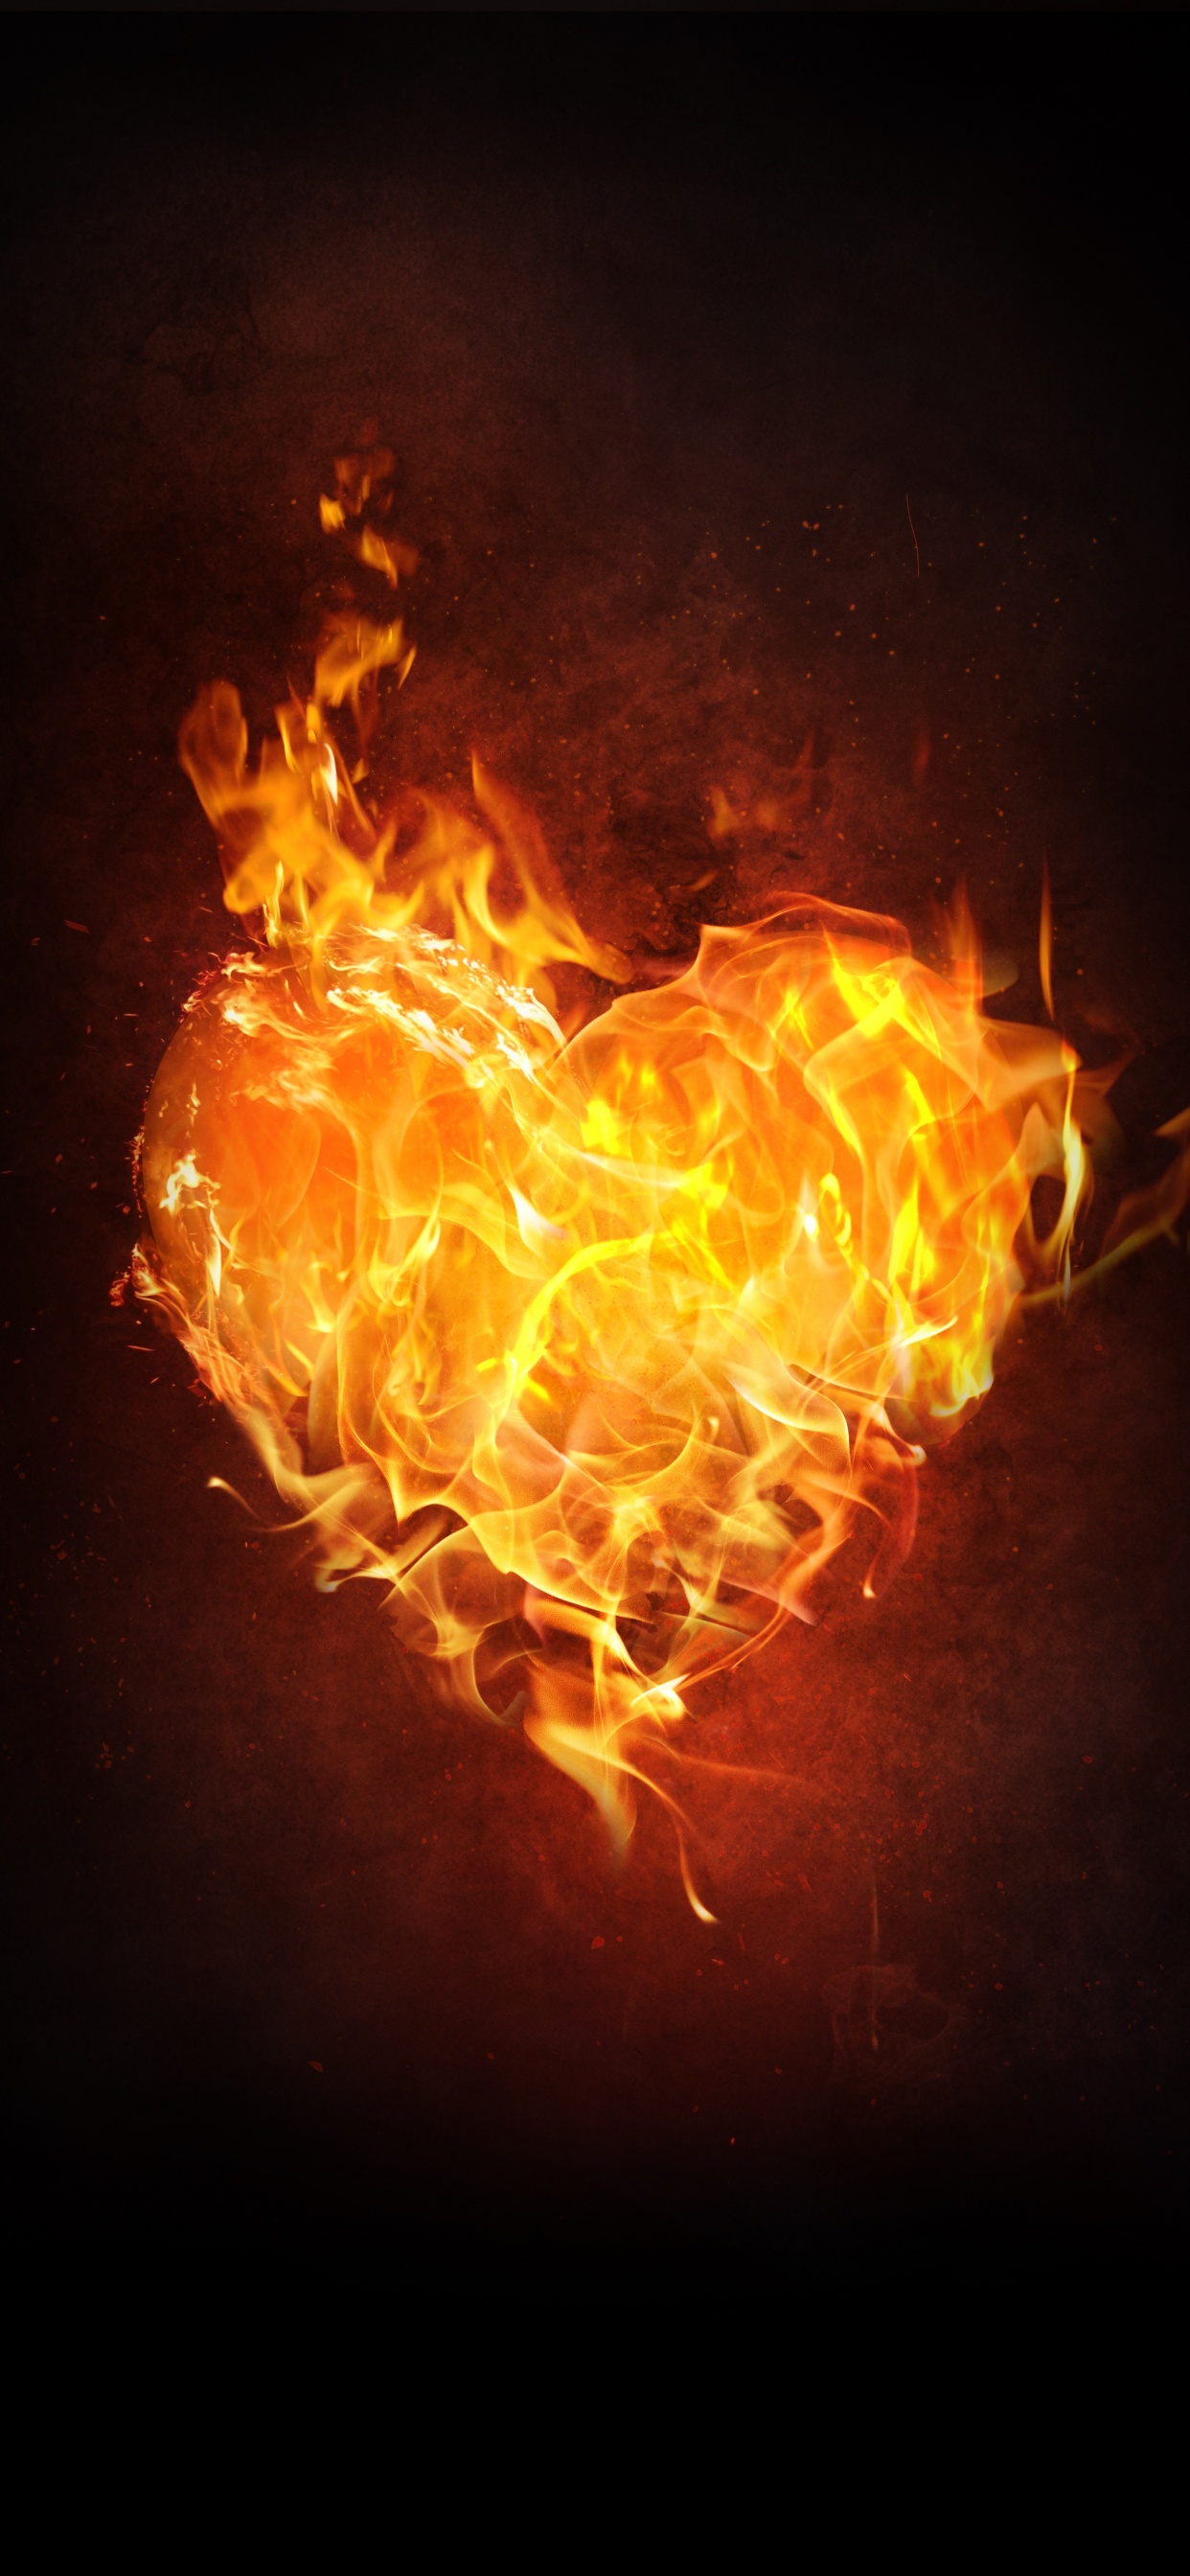 Flame, Fire, Heart, Heat, Orange. Wallpaper in 1242x2688 Resolution